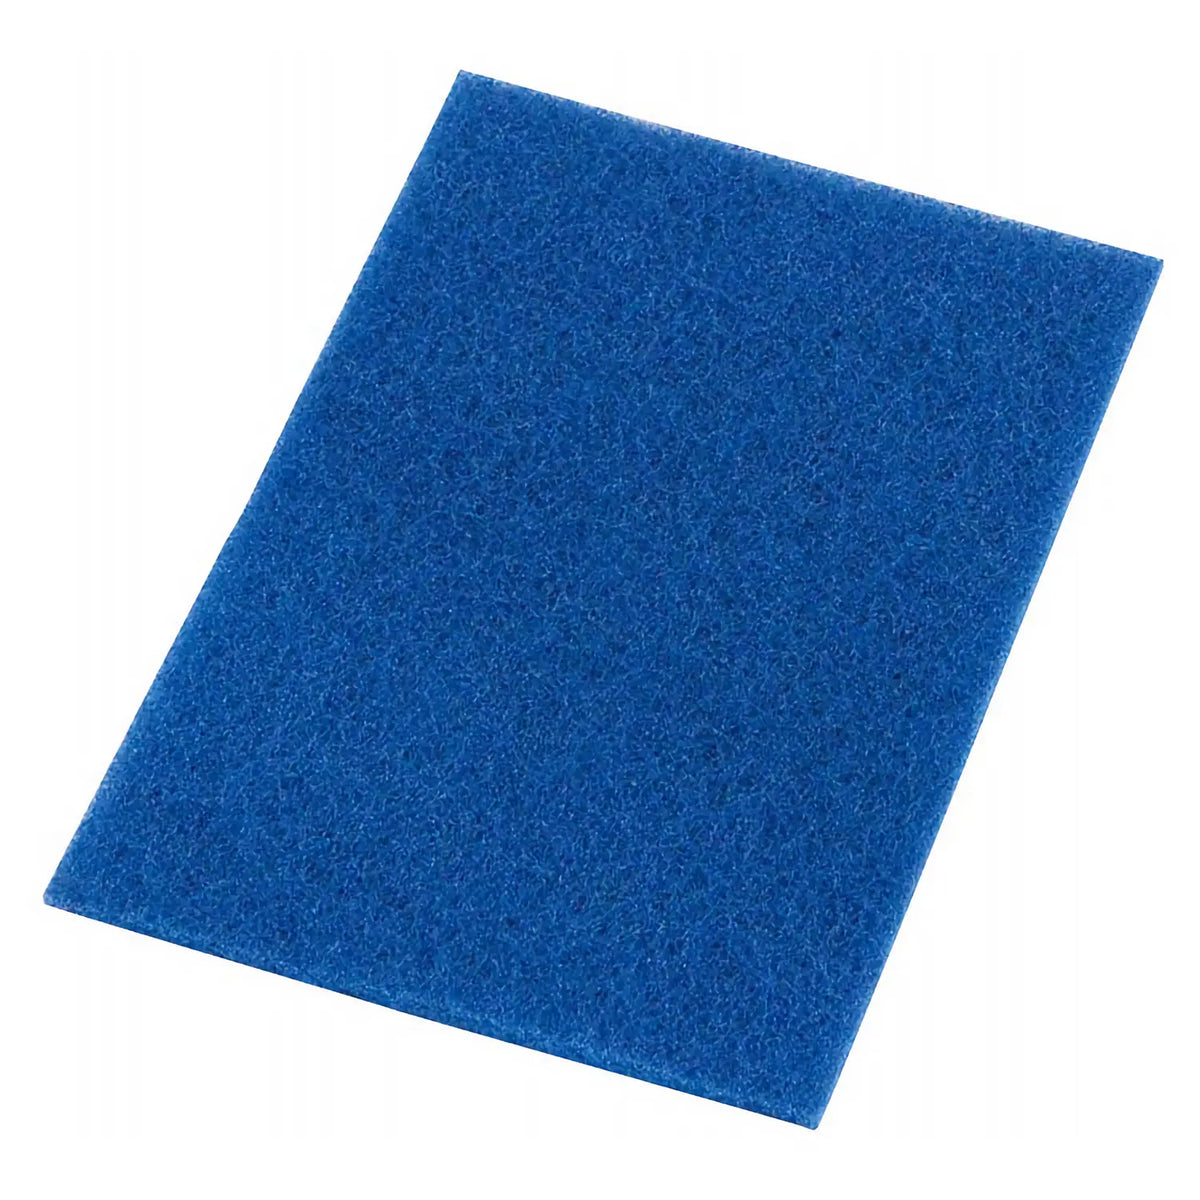 3M Scotch-Brite Nylon Non-Woven Fabric Scrubbing Scour Blue